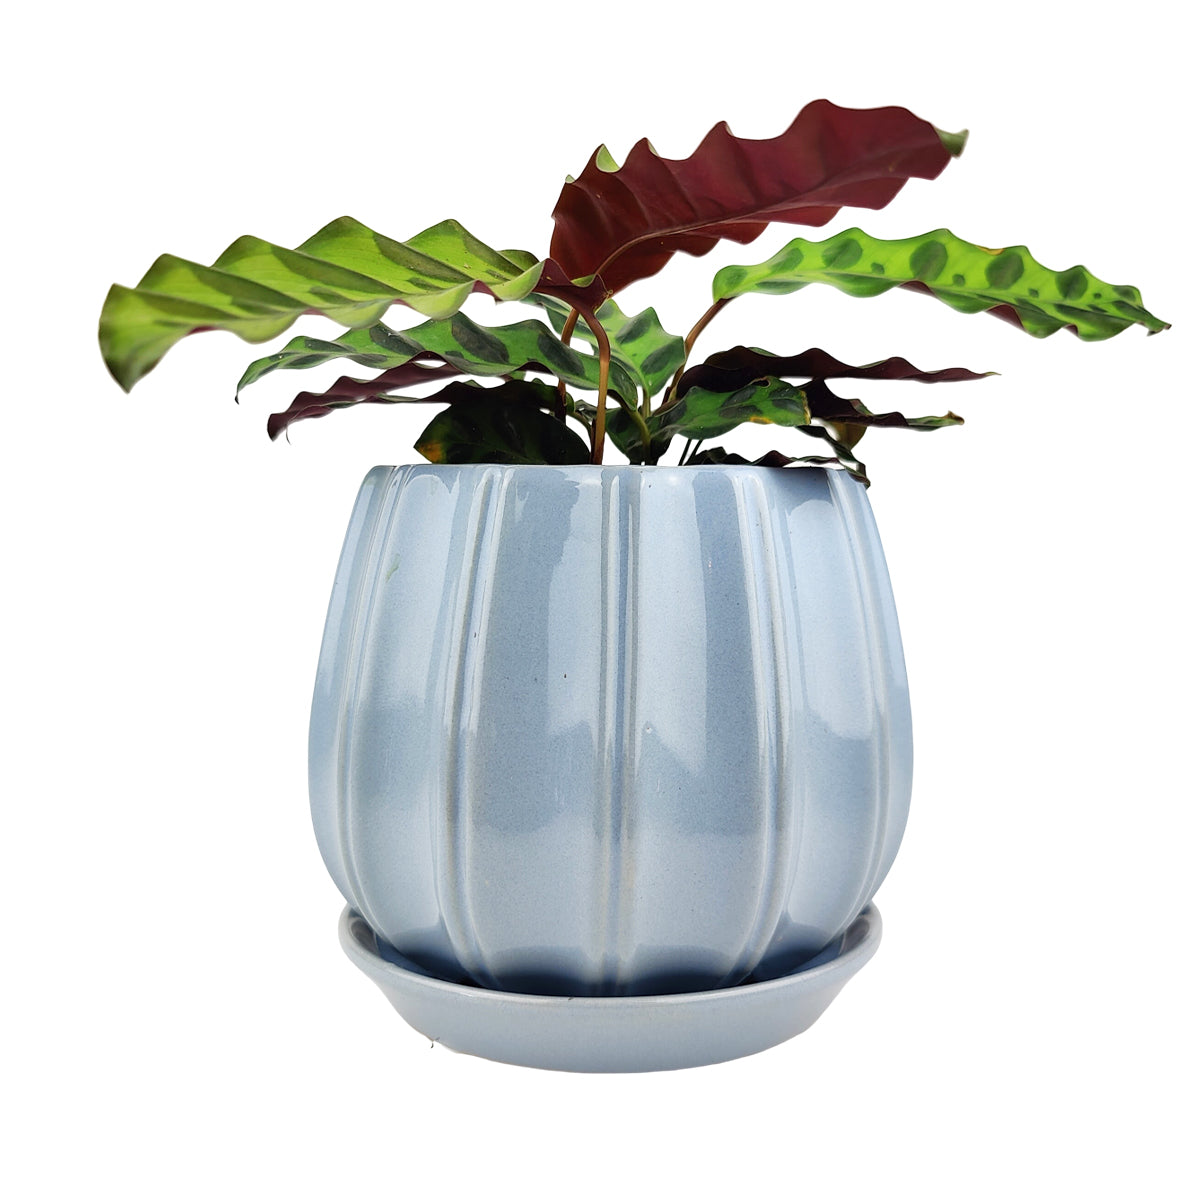 6 inch Blue Glazed Ceramic Contour Planter - Houseplant Pot for Sale by Succulents Box